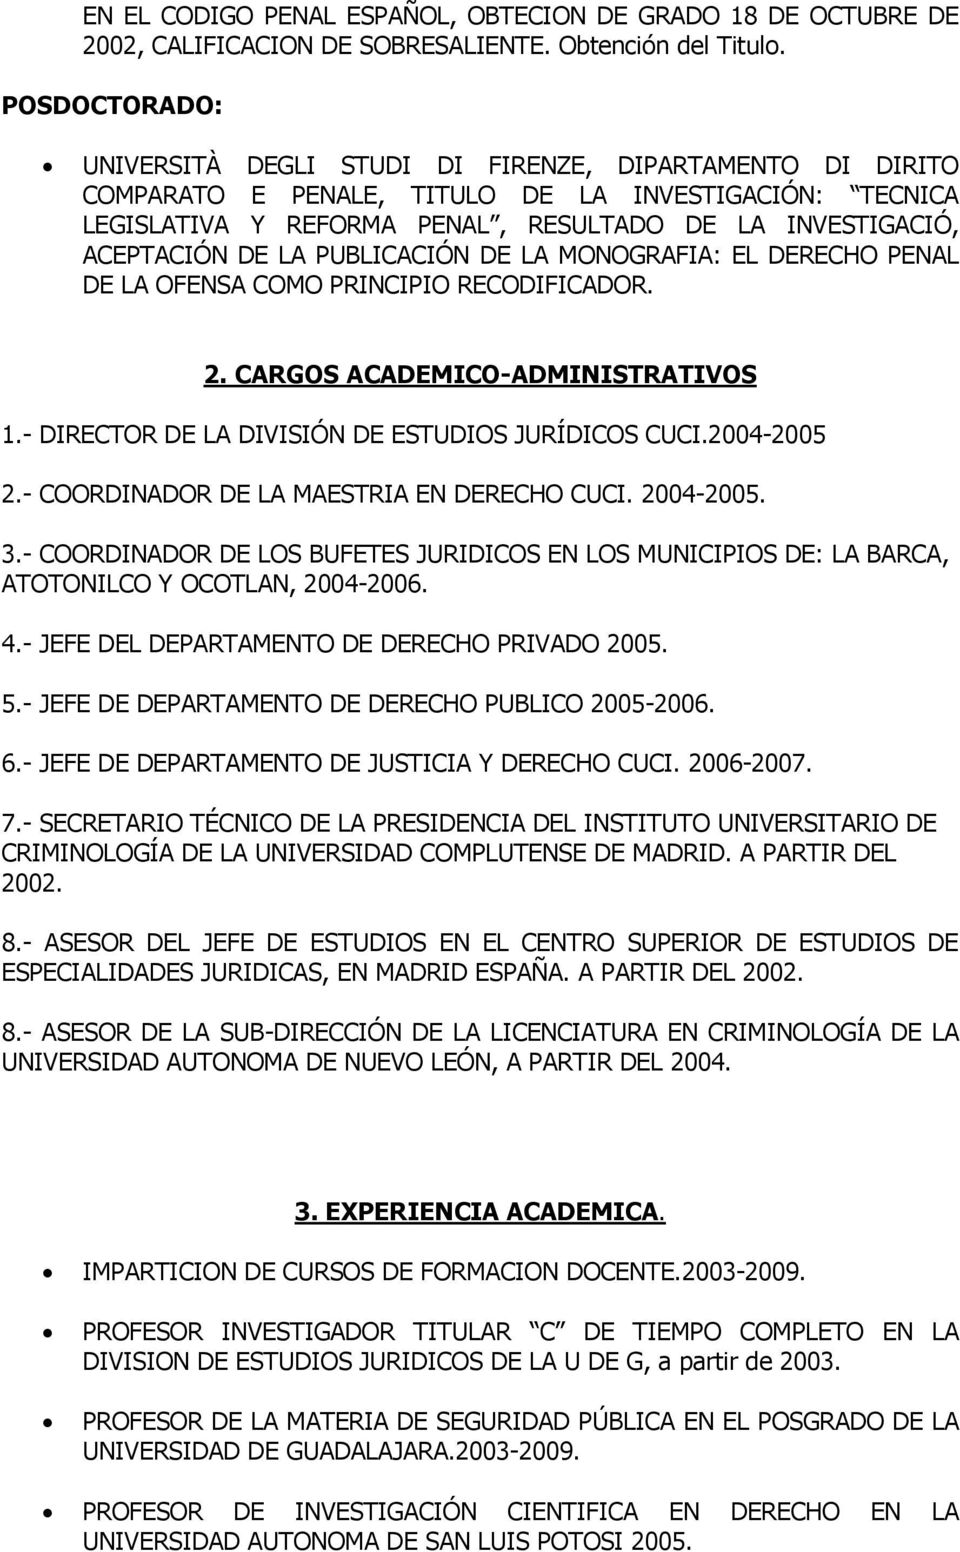 DE LA PUBLICACIÓN DE LA MONOGRAFIA: EL DERECHO PENAL DE LA OFENSA COMO PRINCIPIO RECODIFICADOR. 2. CARGOS ACADEMICO-ADMINISTRATIVOS 1.- DIRECTOR DE LA DIVISIÓN DE ESTUDIOS JURÍDICOS CUCI.2004-2005 2.